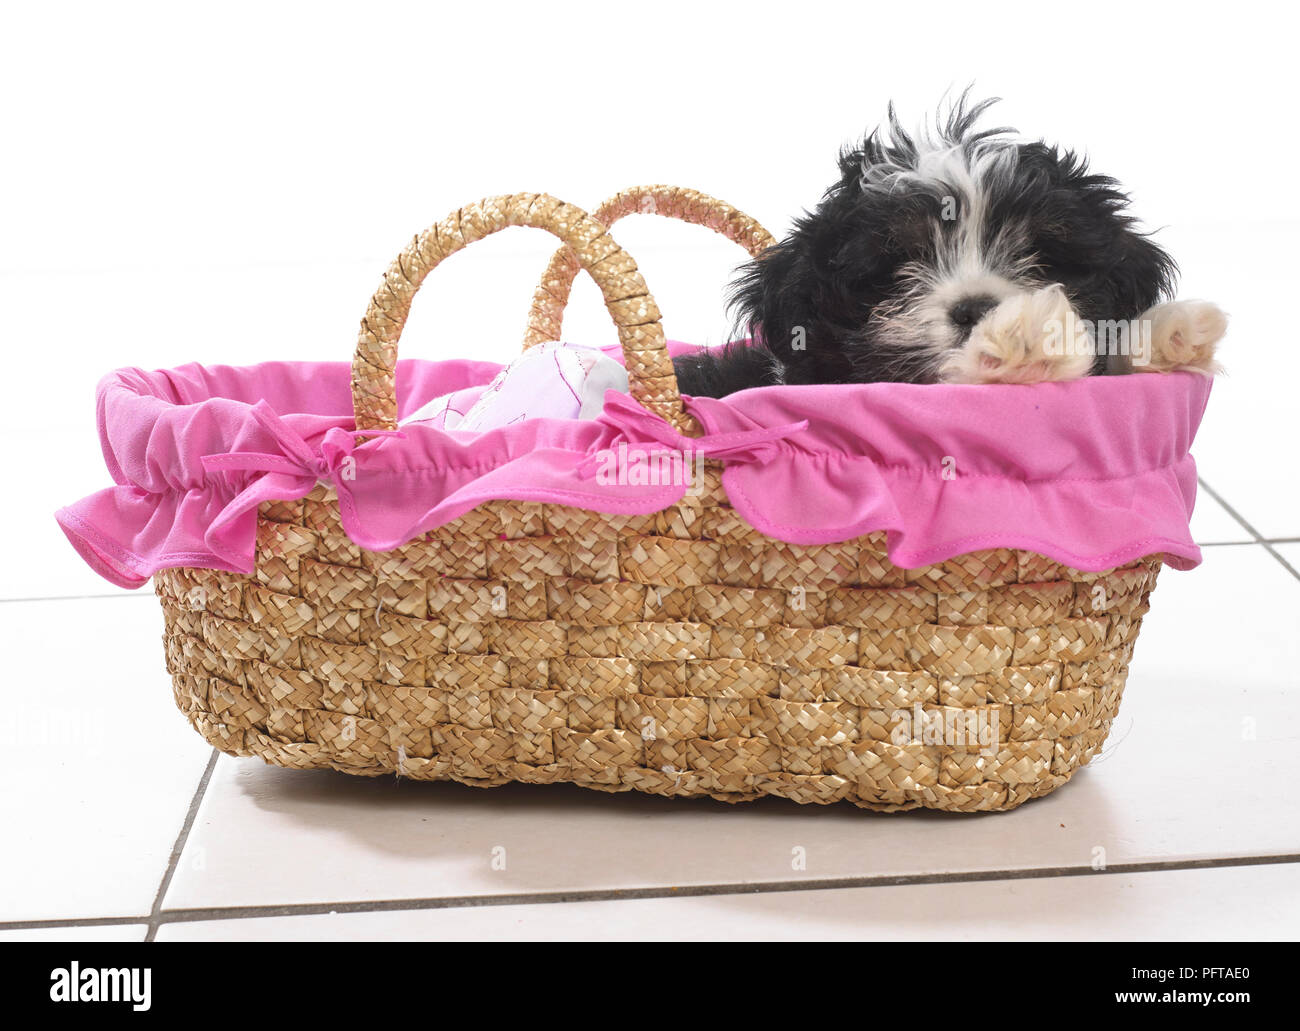 Bianco e nero cucciolo seduto in rosa rivestito in tessuto cesto in vimini Foto Stock